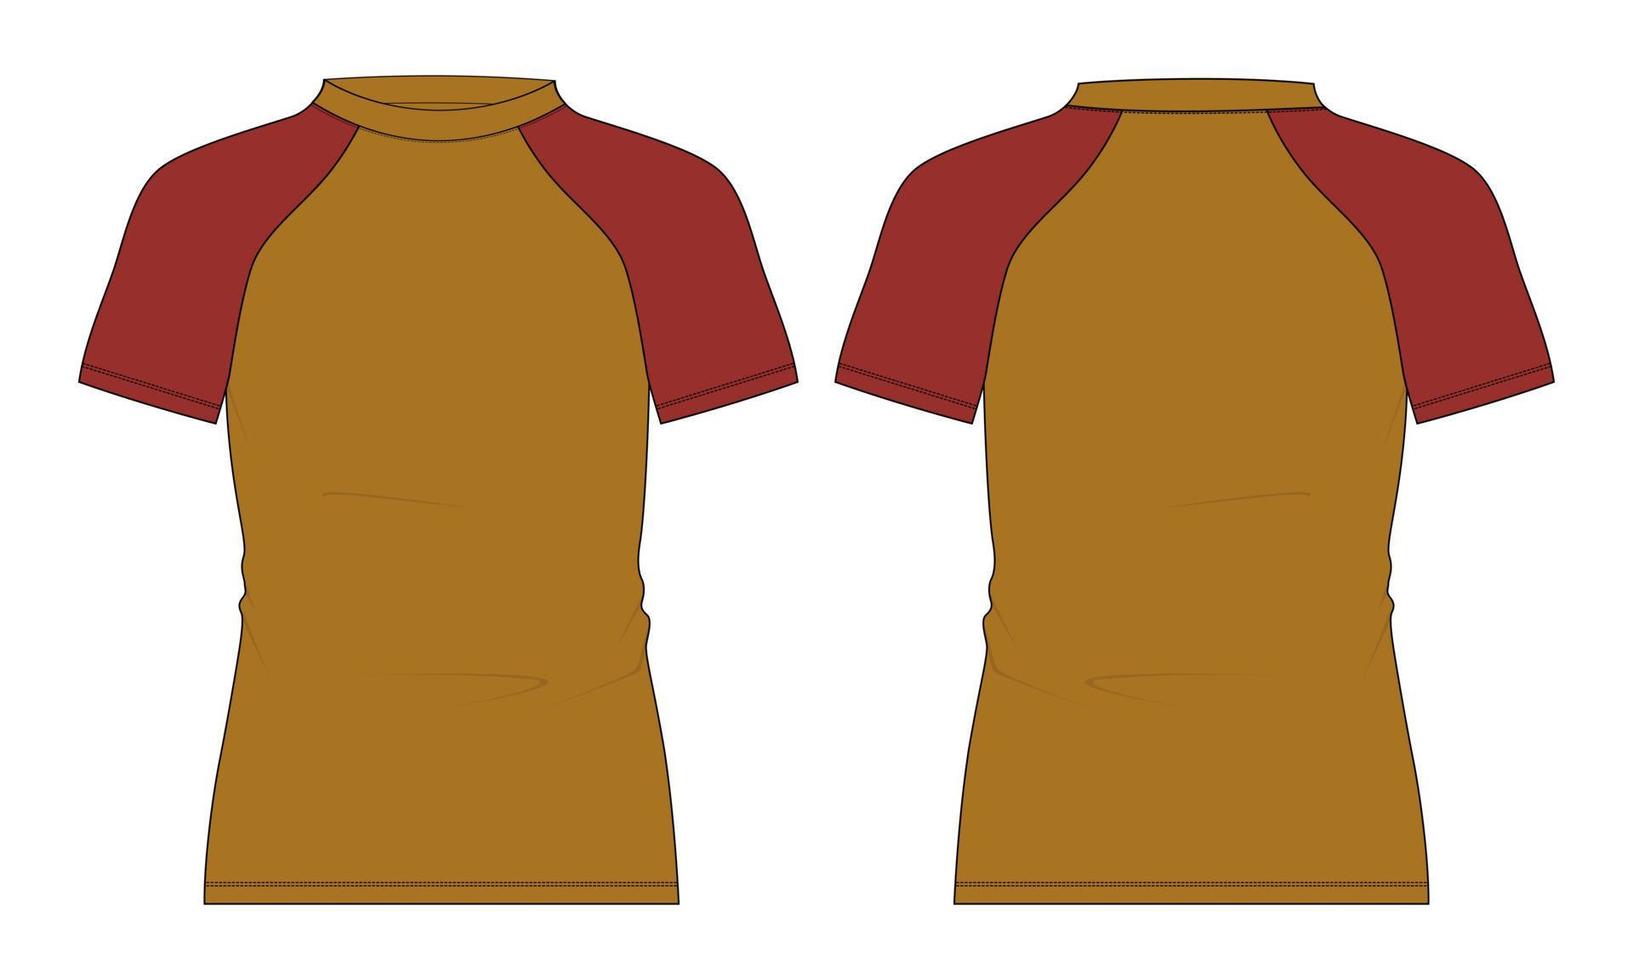 zweifarbiges gelbes und rotes kurzärmliges Raglan Slim Fit T-Shirt insgesamt technische flache Skizzenvektorillustrationsvorlage Vorder- und Rückansicht. vektor